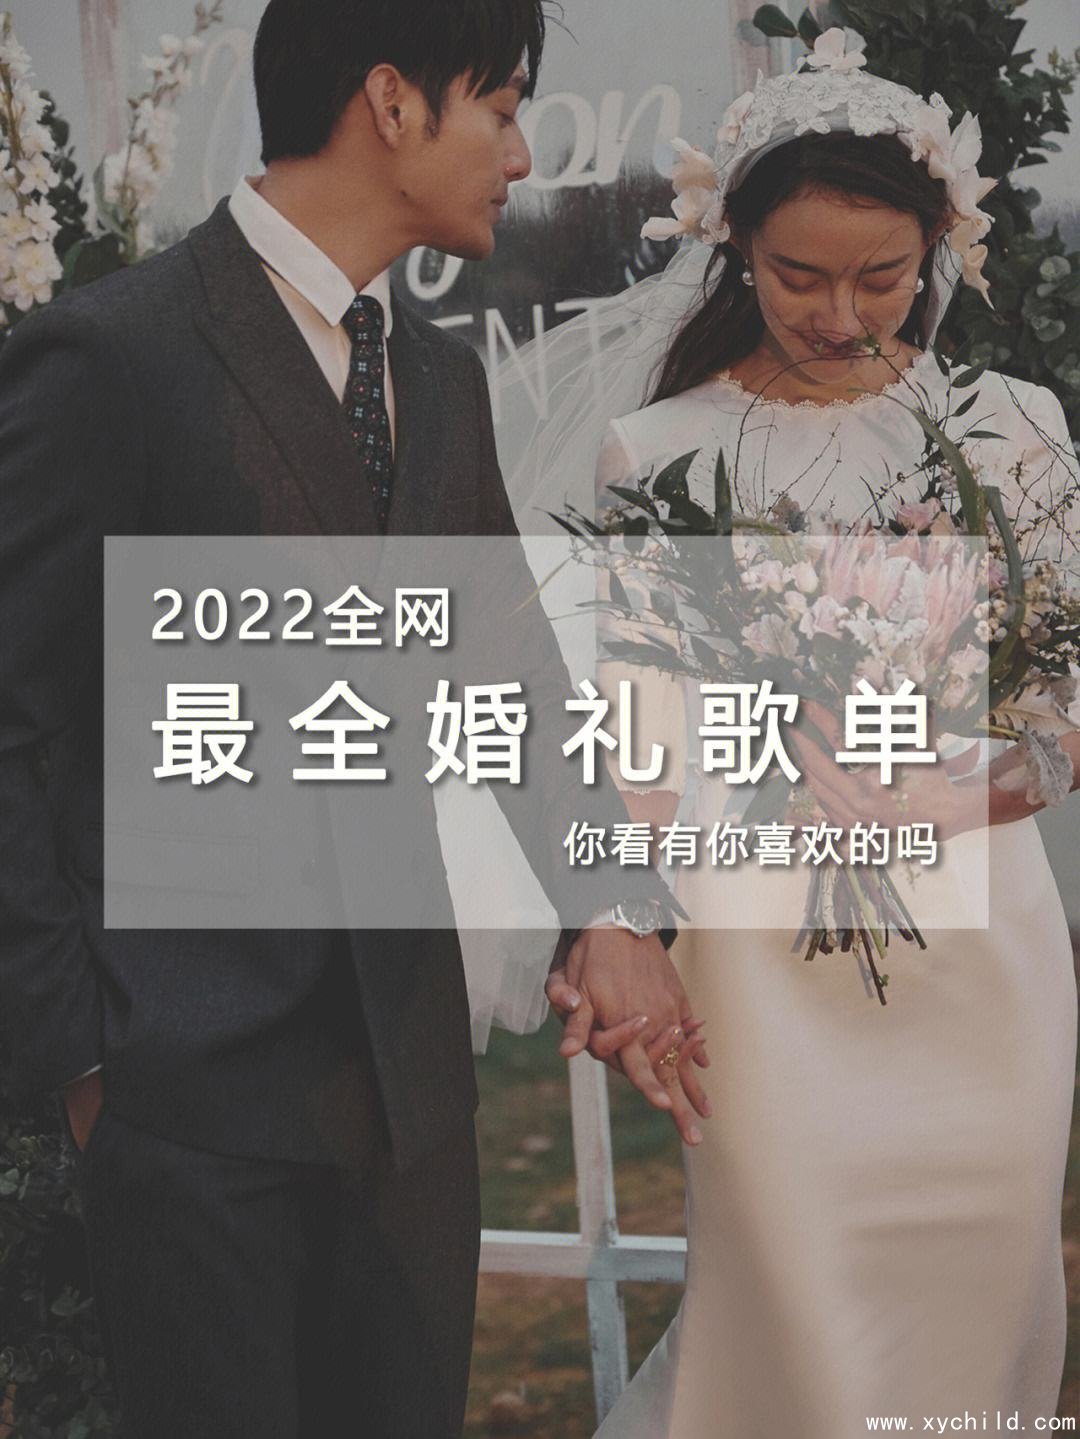 婚礼歌曲推荐，婚礼歌曲推荐中文